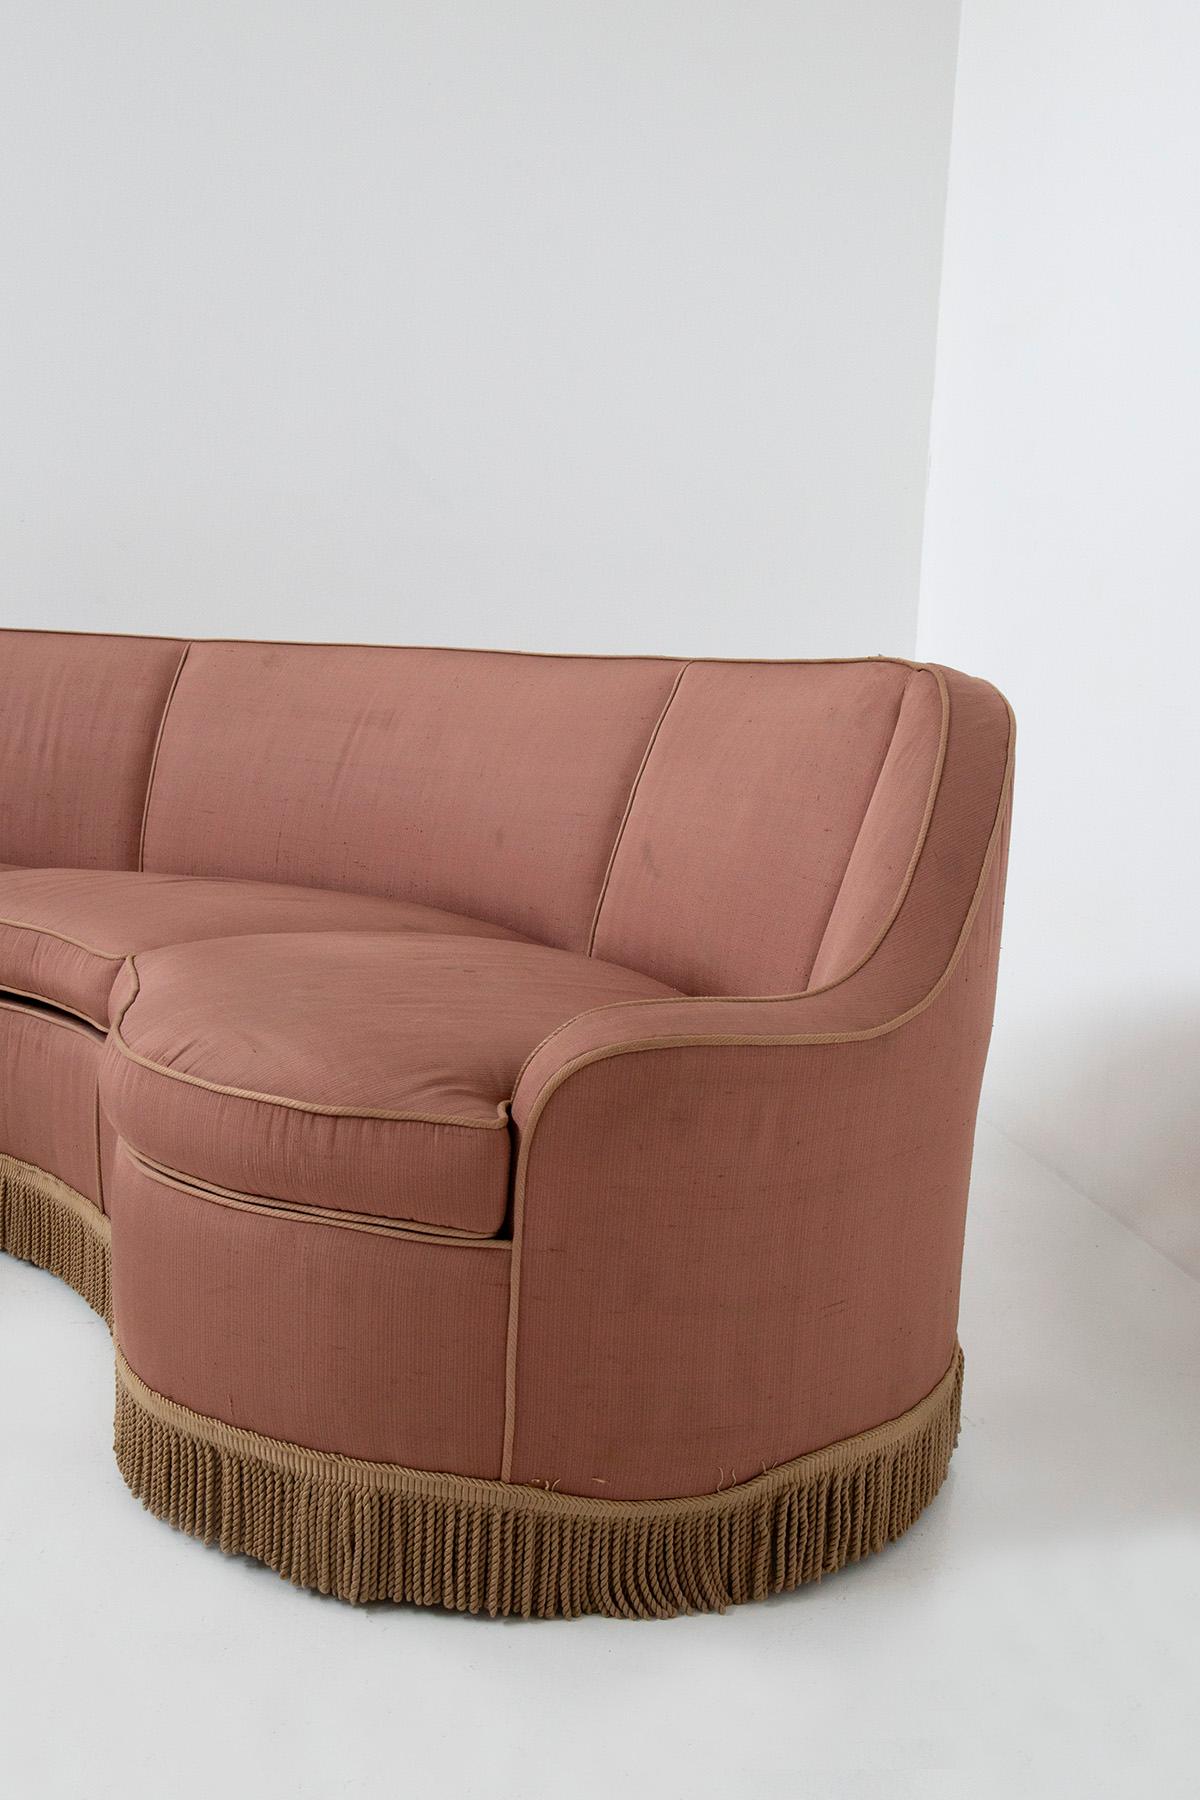 Italian three-seater sofa in pink fabric attributed to Gio Ponti 1